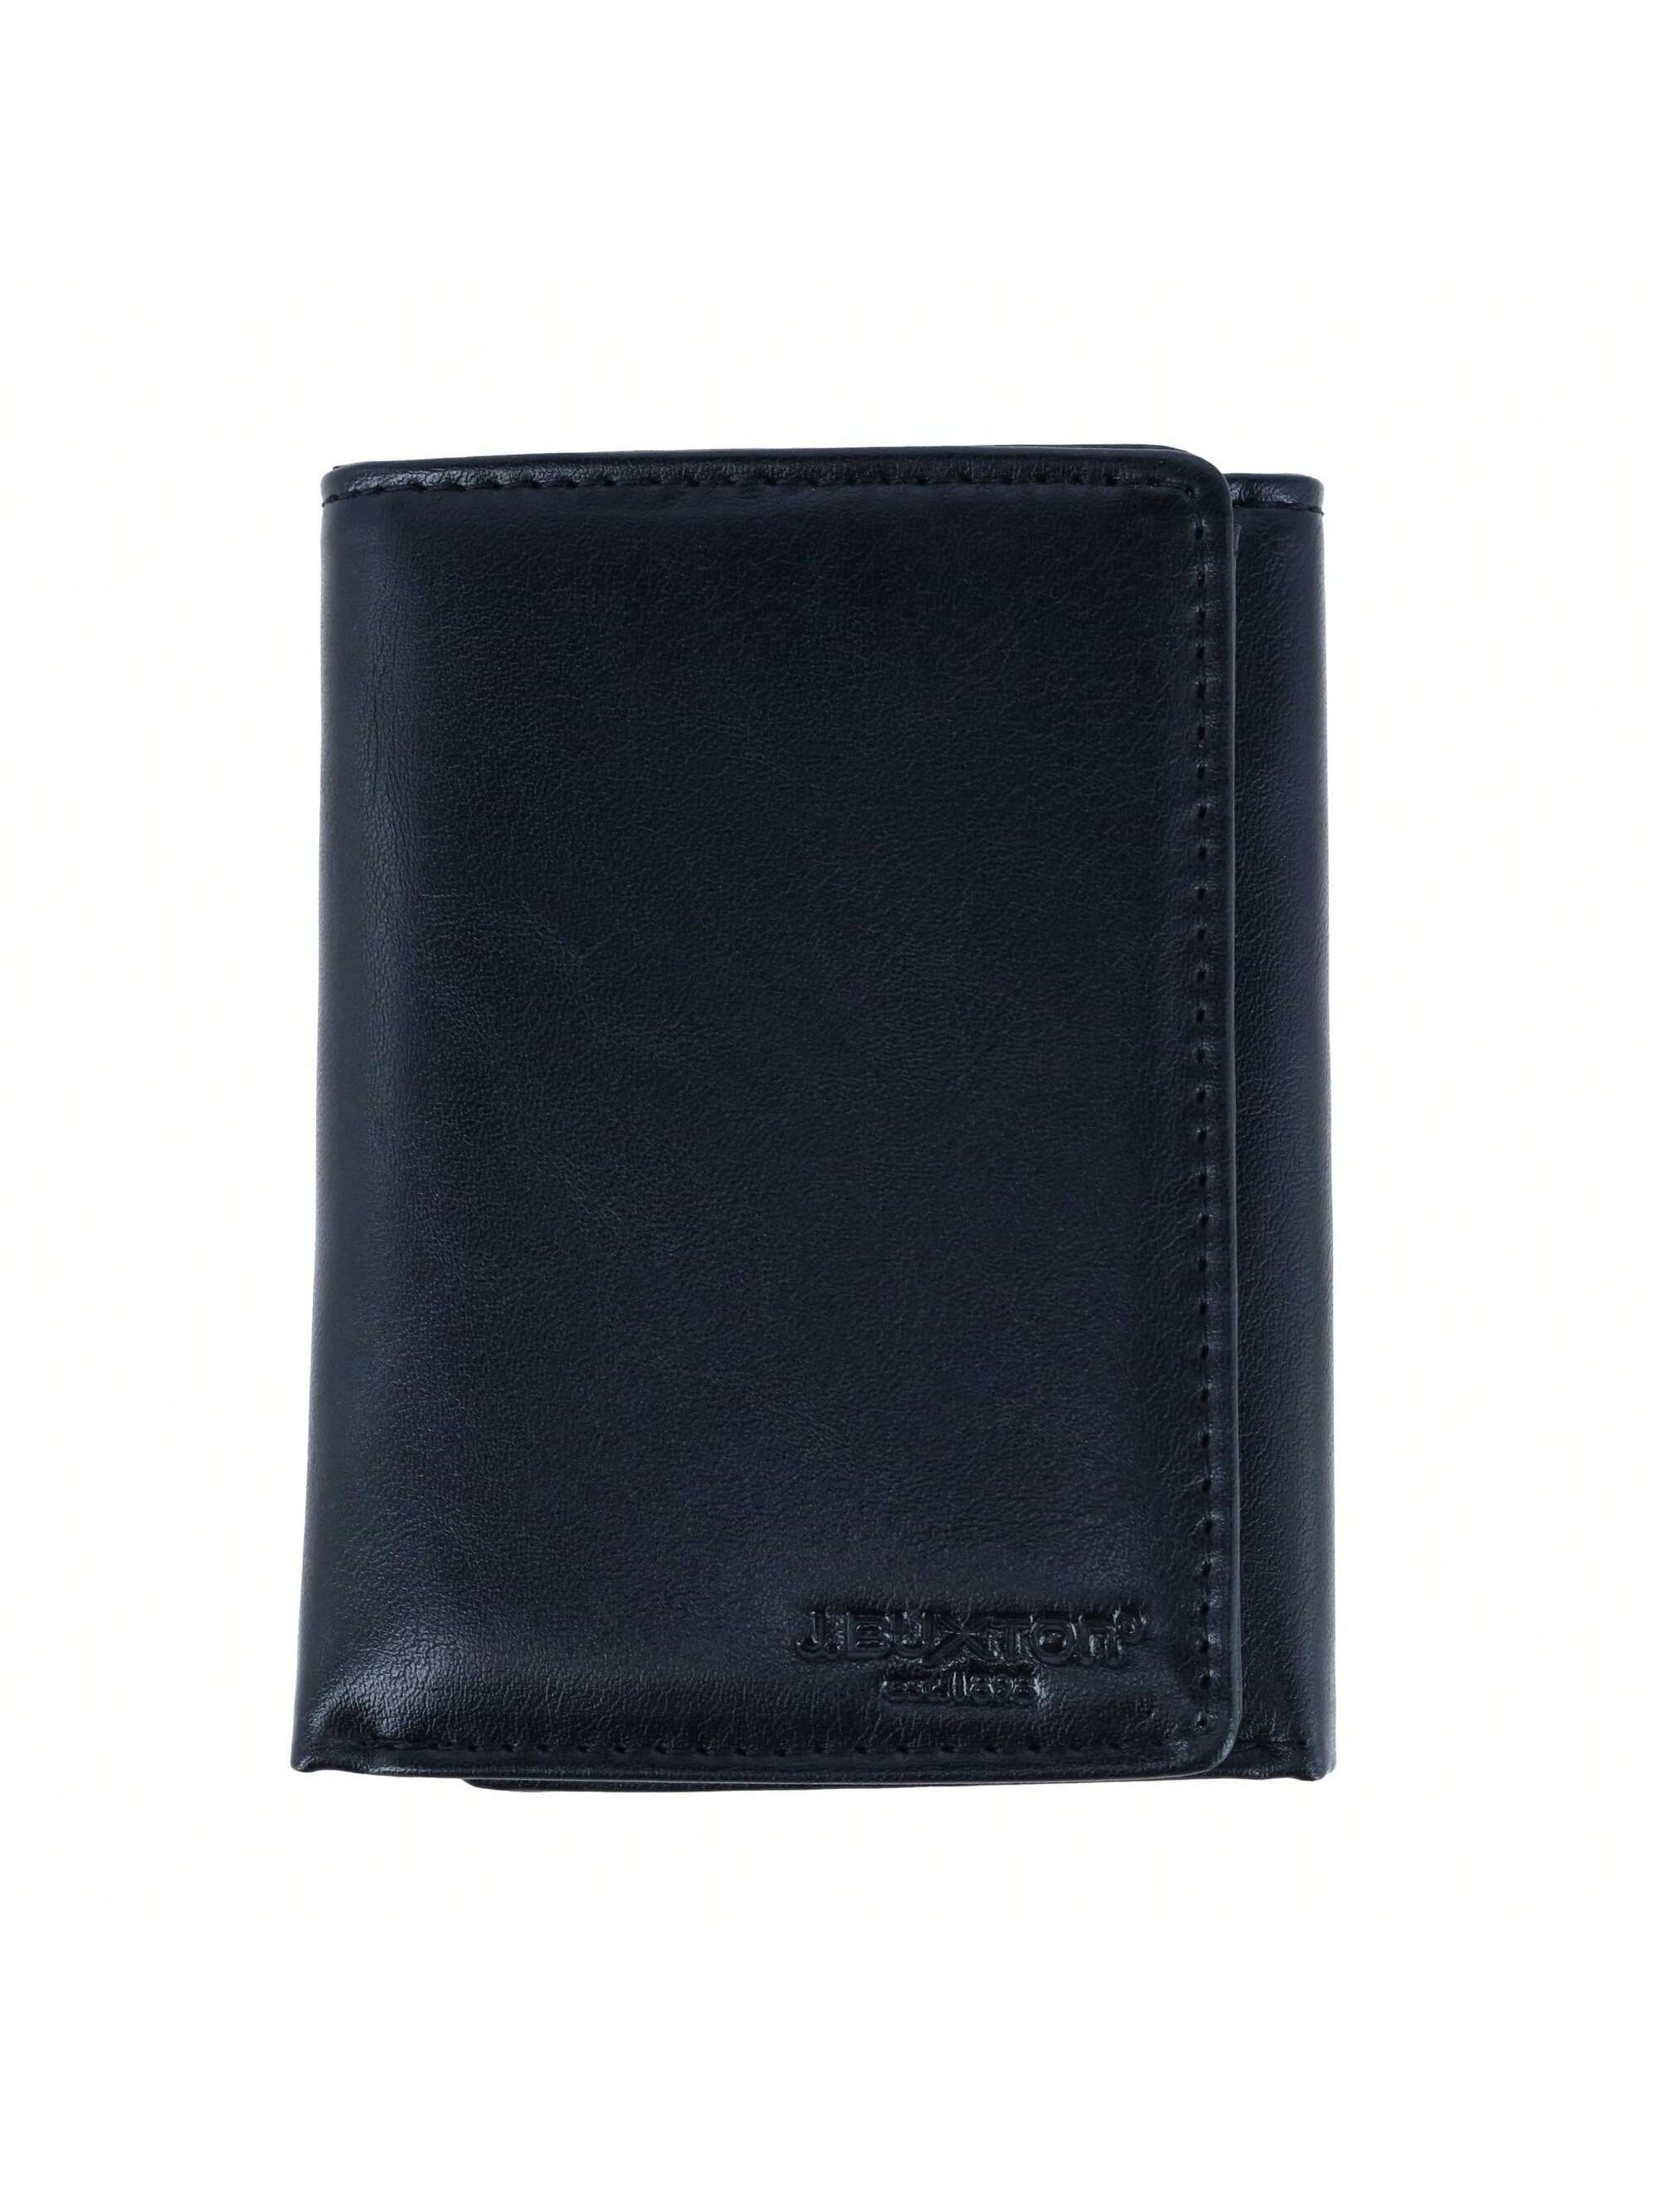 цена Мужской кошелек Buxton тройного сложения из веганской кожи с RFID-метками, черный